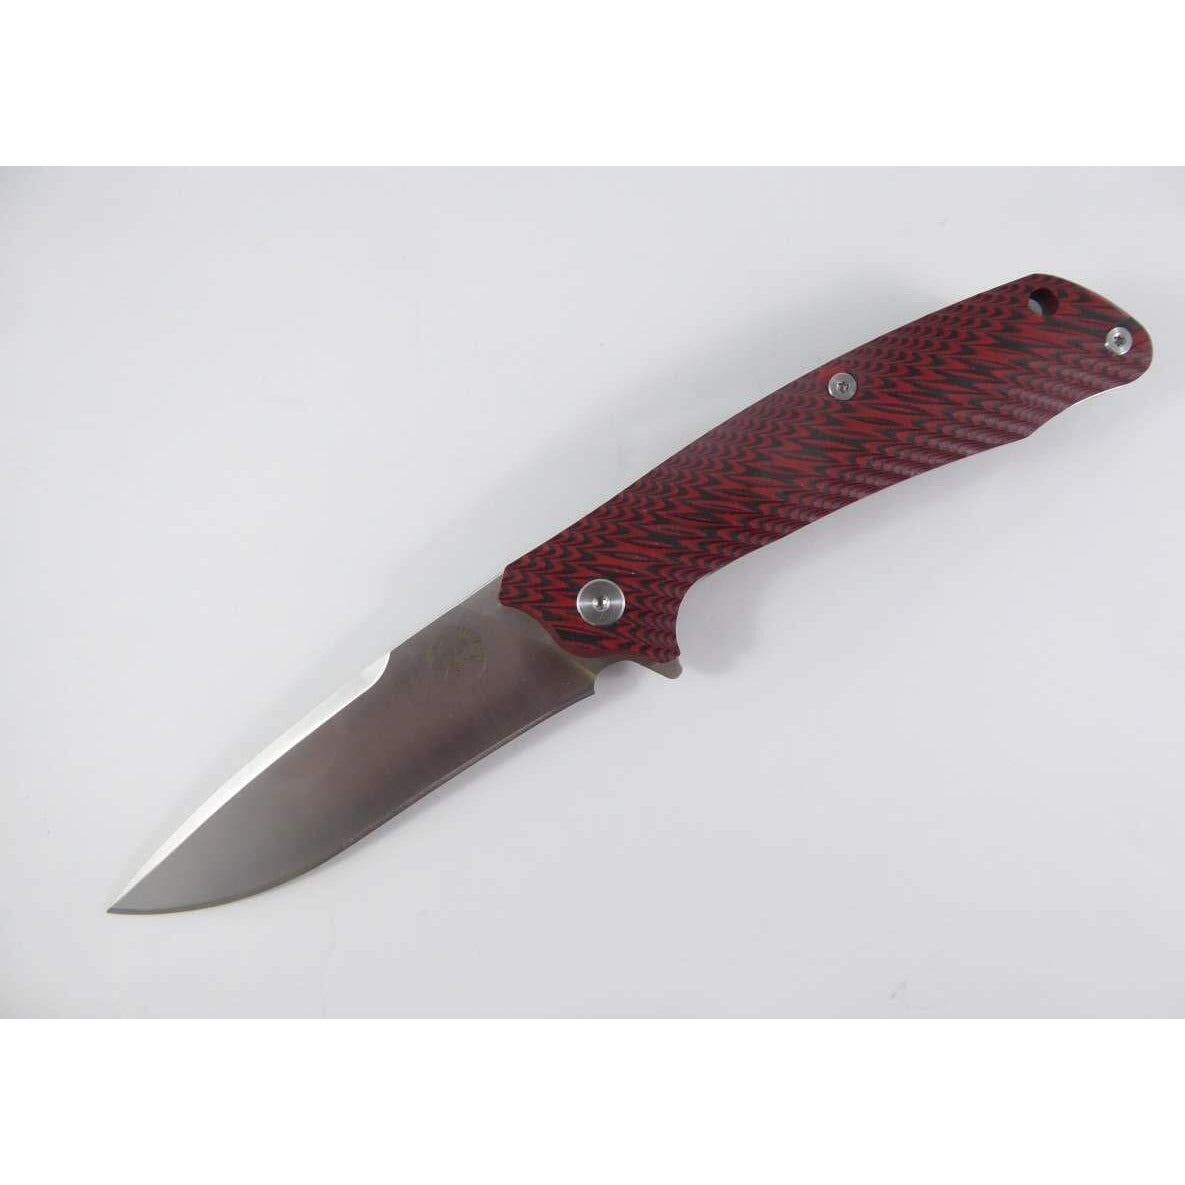 Tassie Tiger Knives Ttk Folding Pocket Knife D2 Steel With G10 Handle For Outdoor Red/black Dark Slate Gray